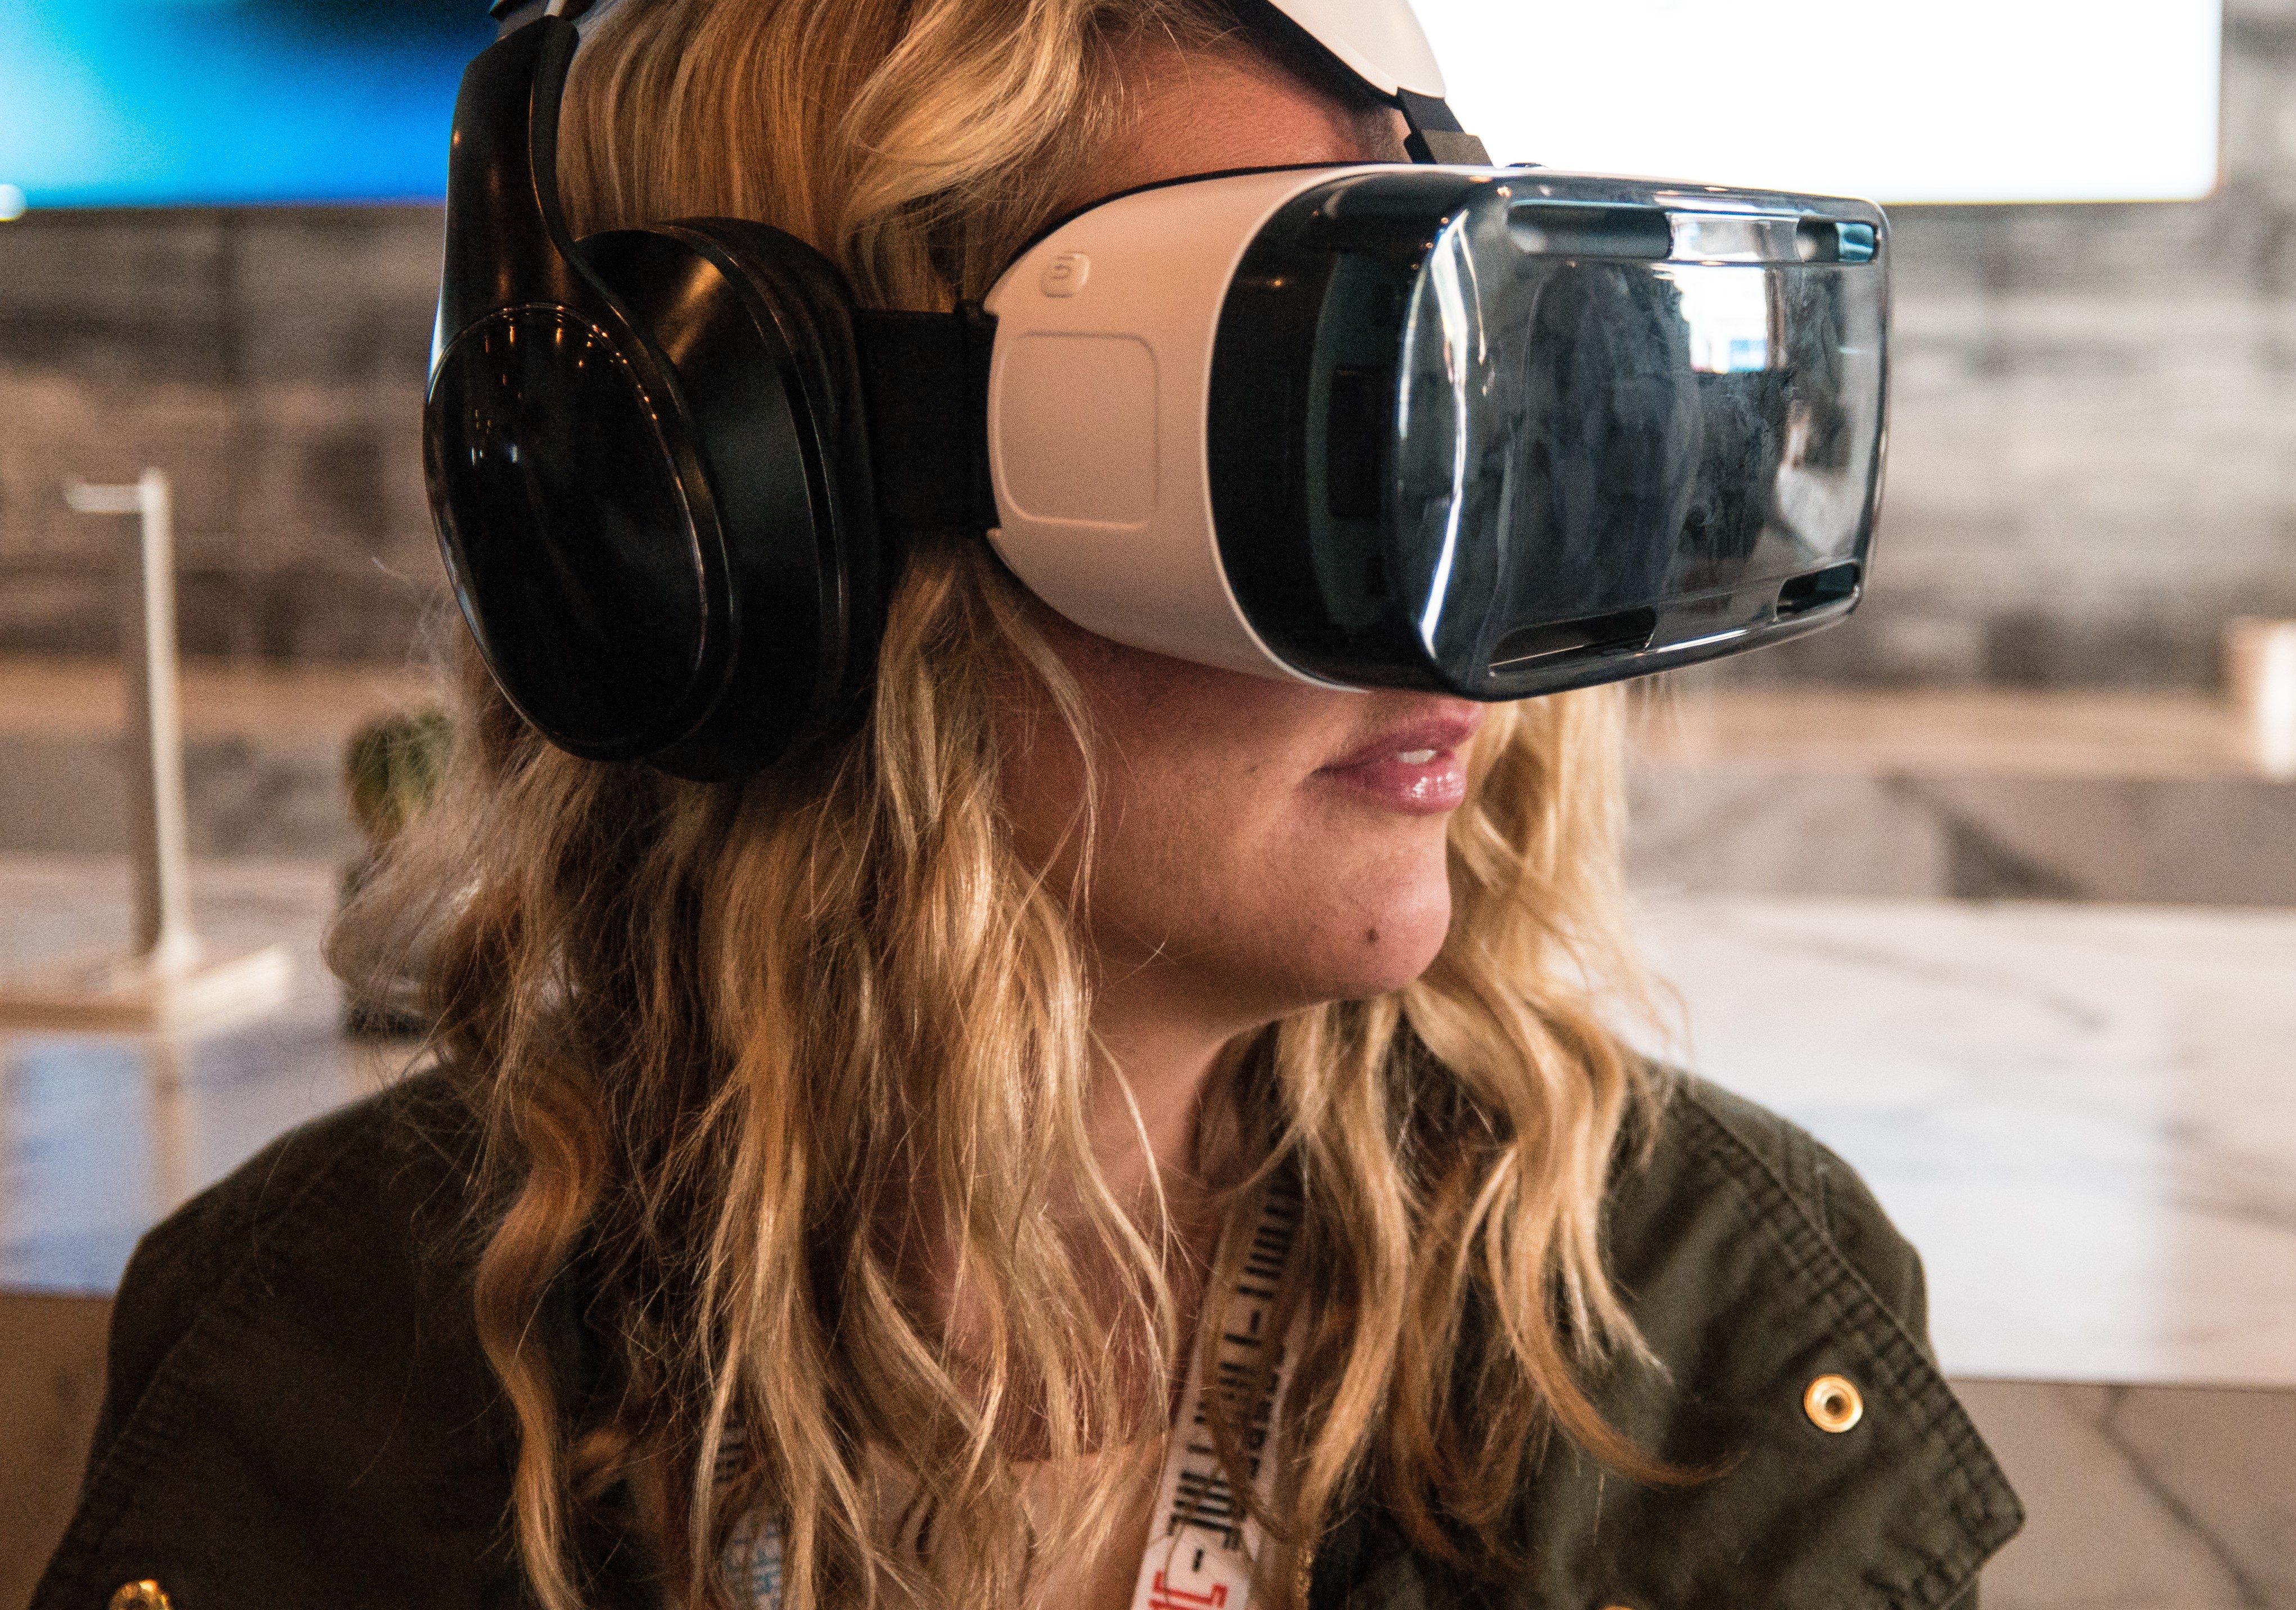 CicerOn, realidad virtual para personas con síndrome de Asperger